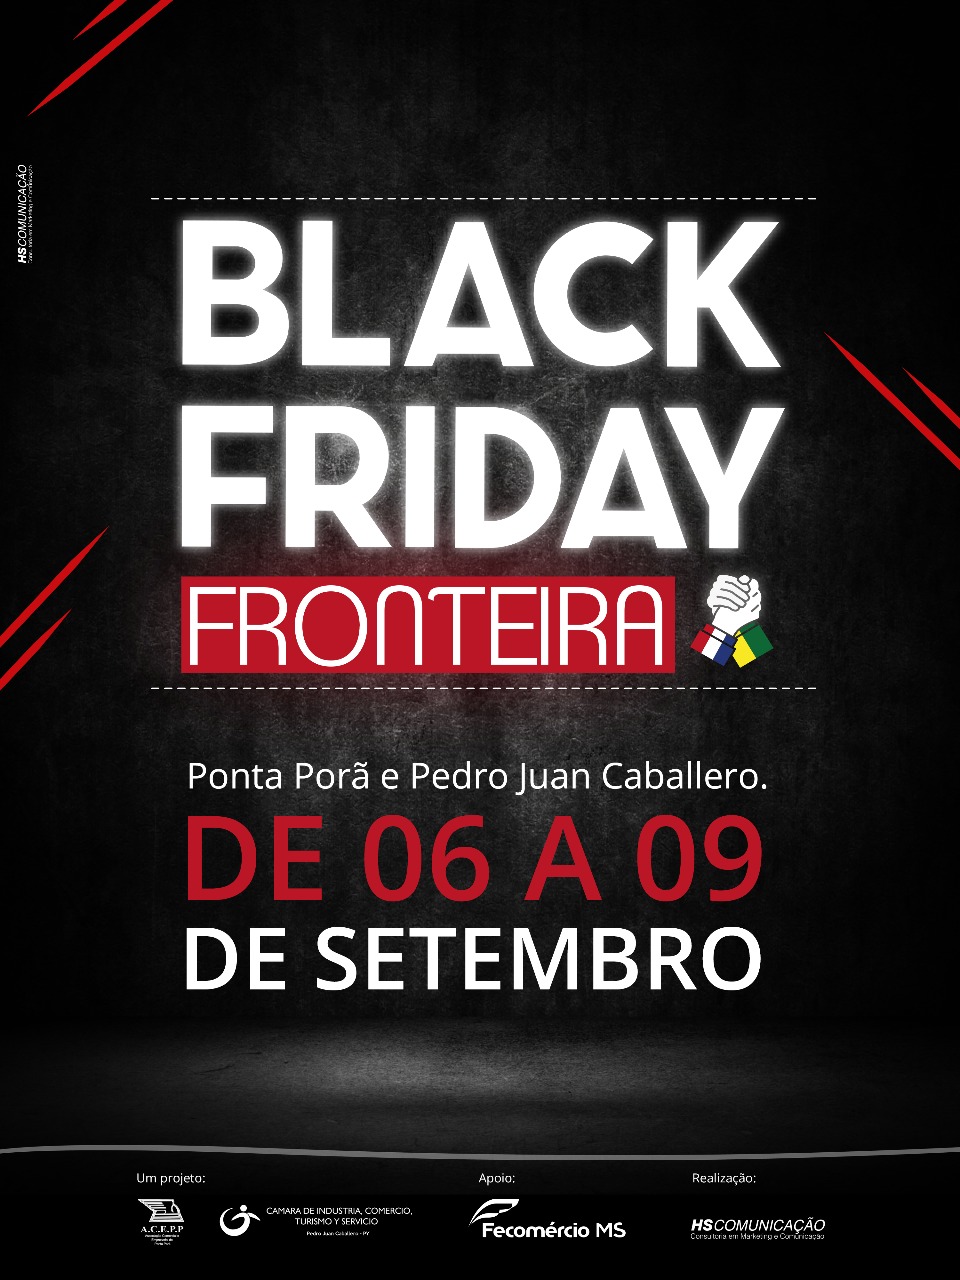 Você está visualizando atualmente Black Friday Fronteira será lançada na próxima terça-feira, 31